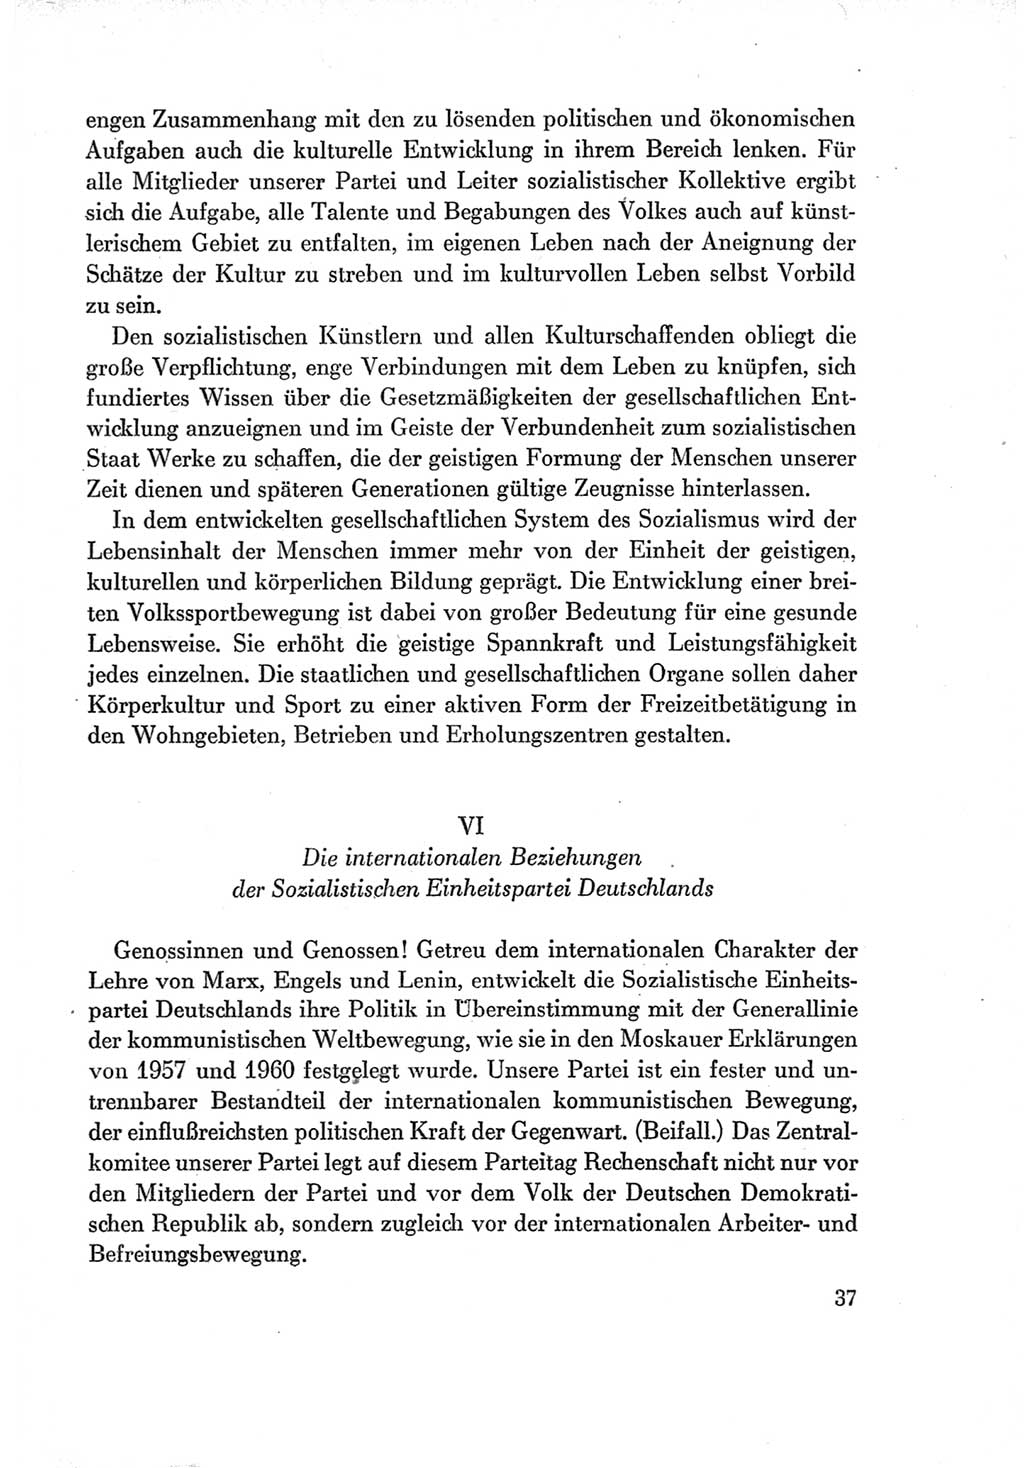 Protokoll der Verhandlungen des Ⅶ. Parteitages der Sozialistischen Einheitspartei Deutschlands (SED) [Deutsche Demokratische Republik (DDR)] 1967, Band Ⅱ, Seite 37 (Prot. Verh. Ⅶ. PT SED DDR 1967, Bd. Ⅱ, S. 37)